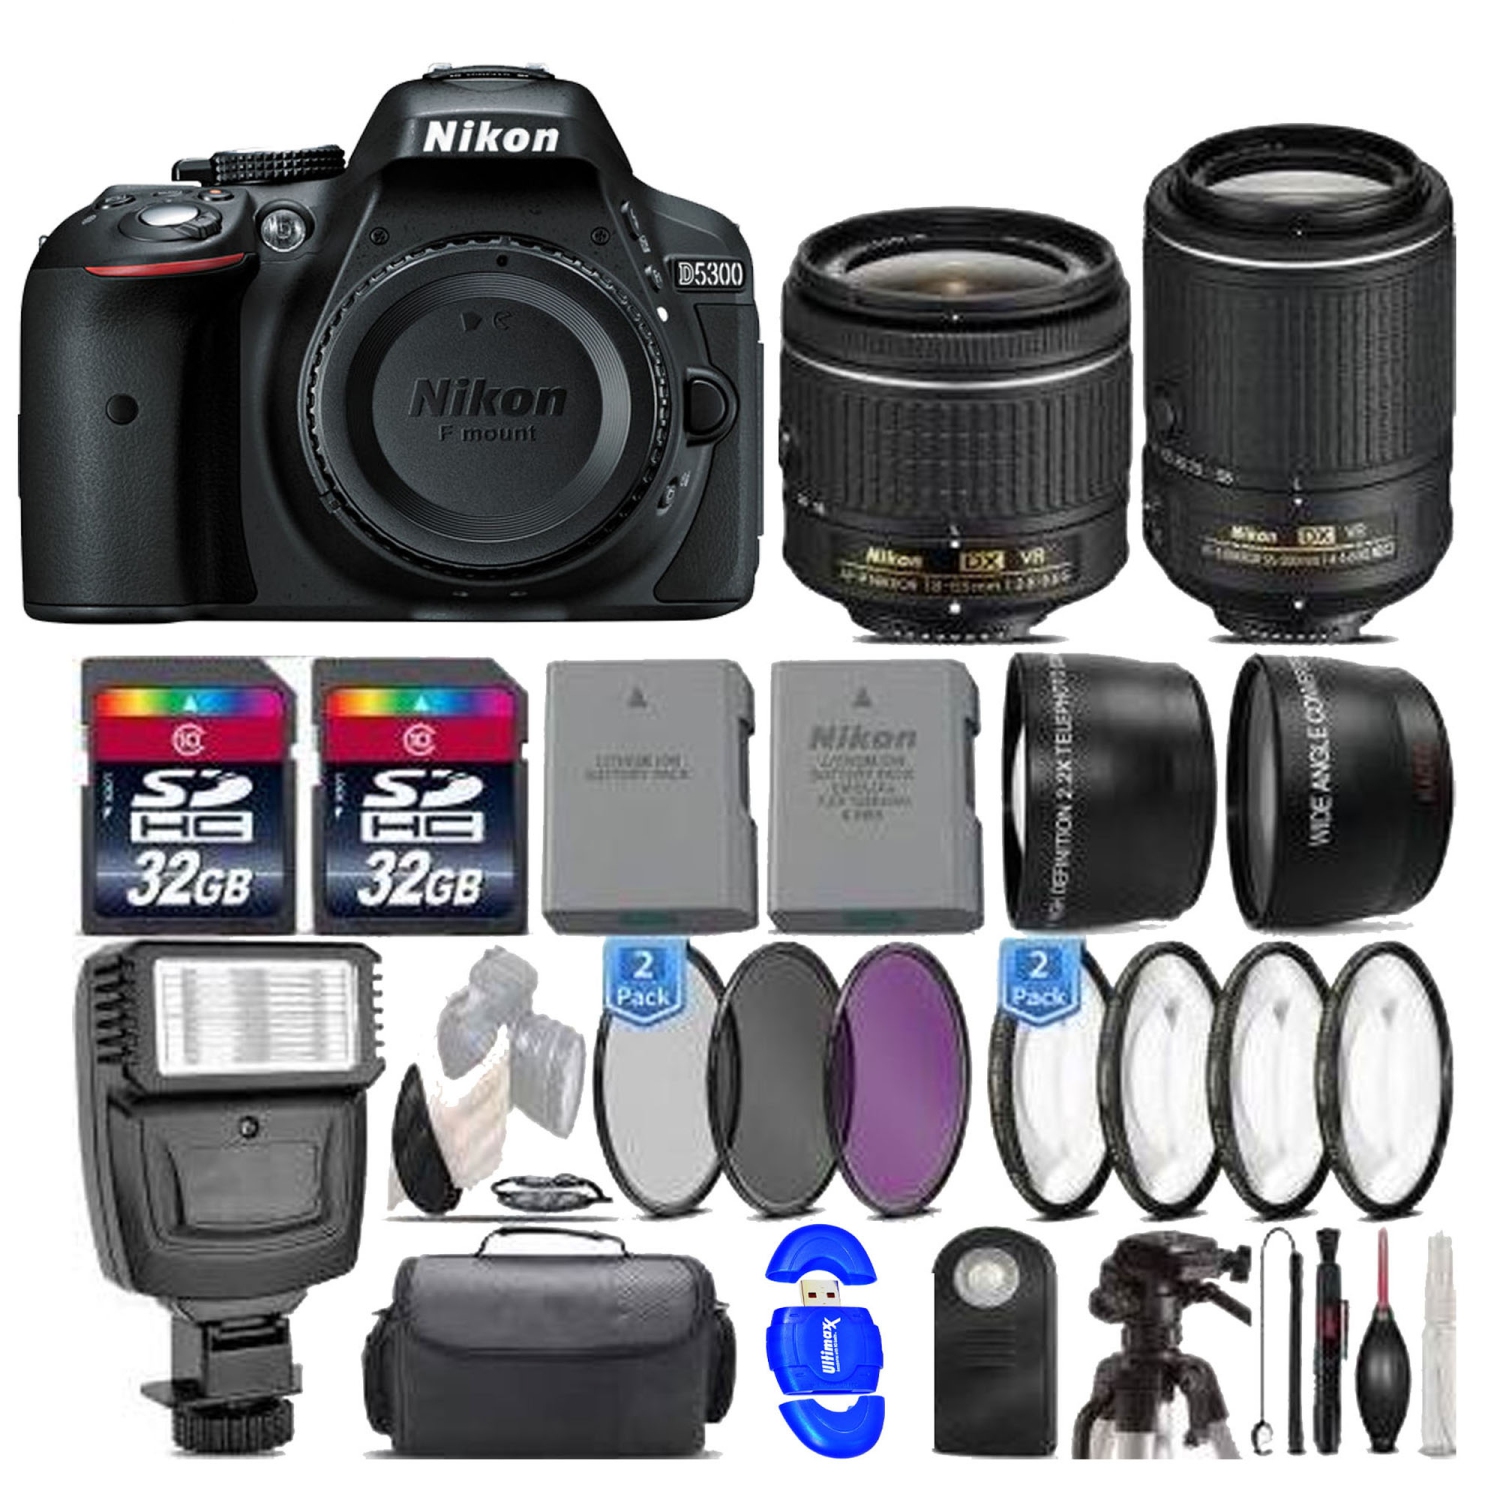 Nikon D5300 DSLR Camera ||18-55mm AF-P Lens ||55-200mm VR II || Supreme Bundle - US Version w/ Seller Warranty